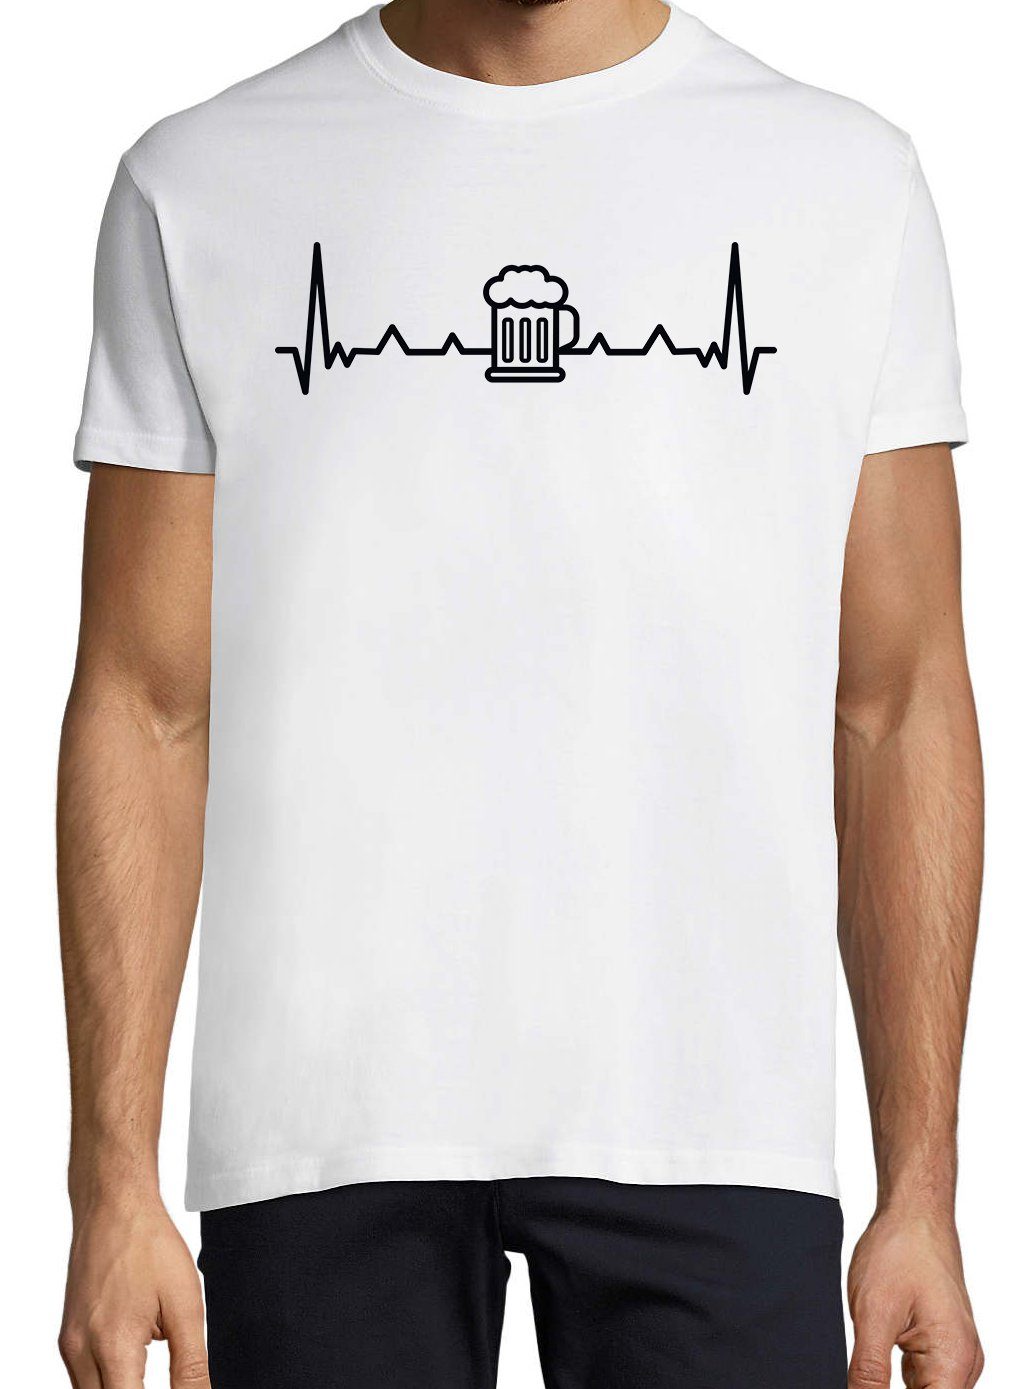 T-Shirt mit Logo Weiß Aufdruck Heartbeat Print-Shirt Designz lustigem Youth Bier Herren